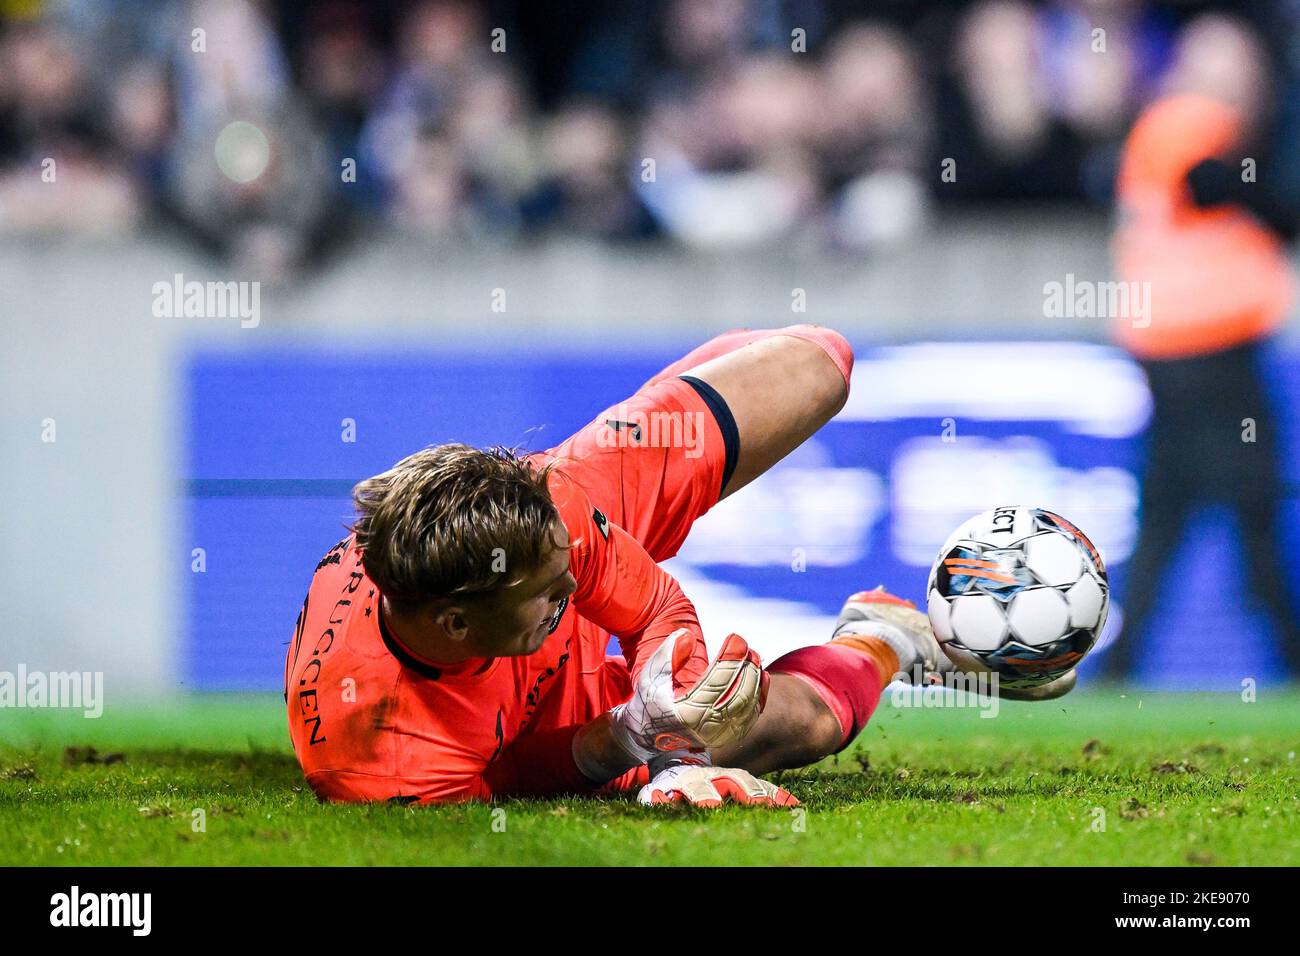 Anderlecht's goalkeeper Bart Verbruggen pictured during a soccer